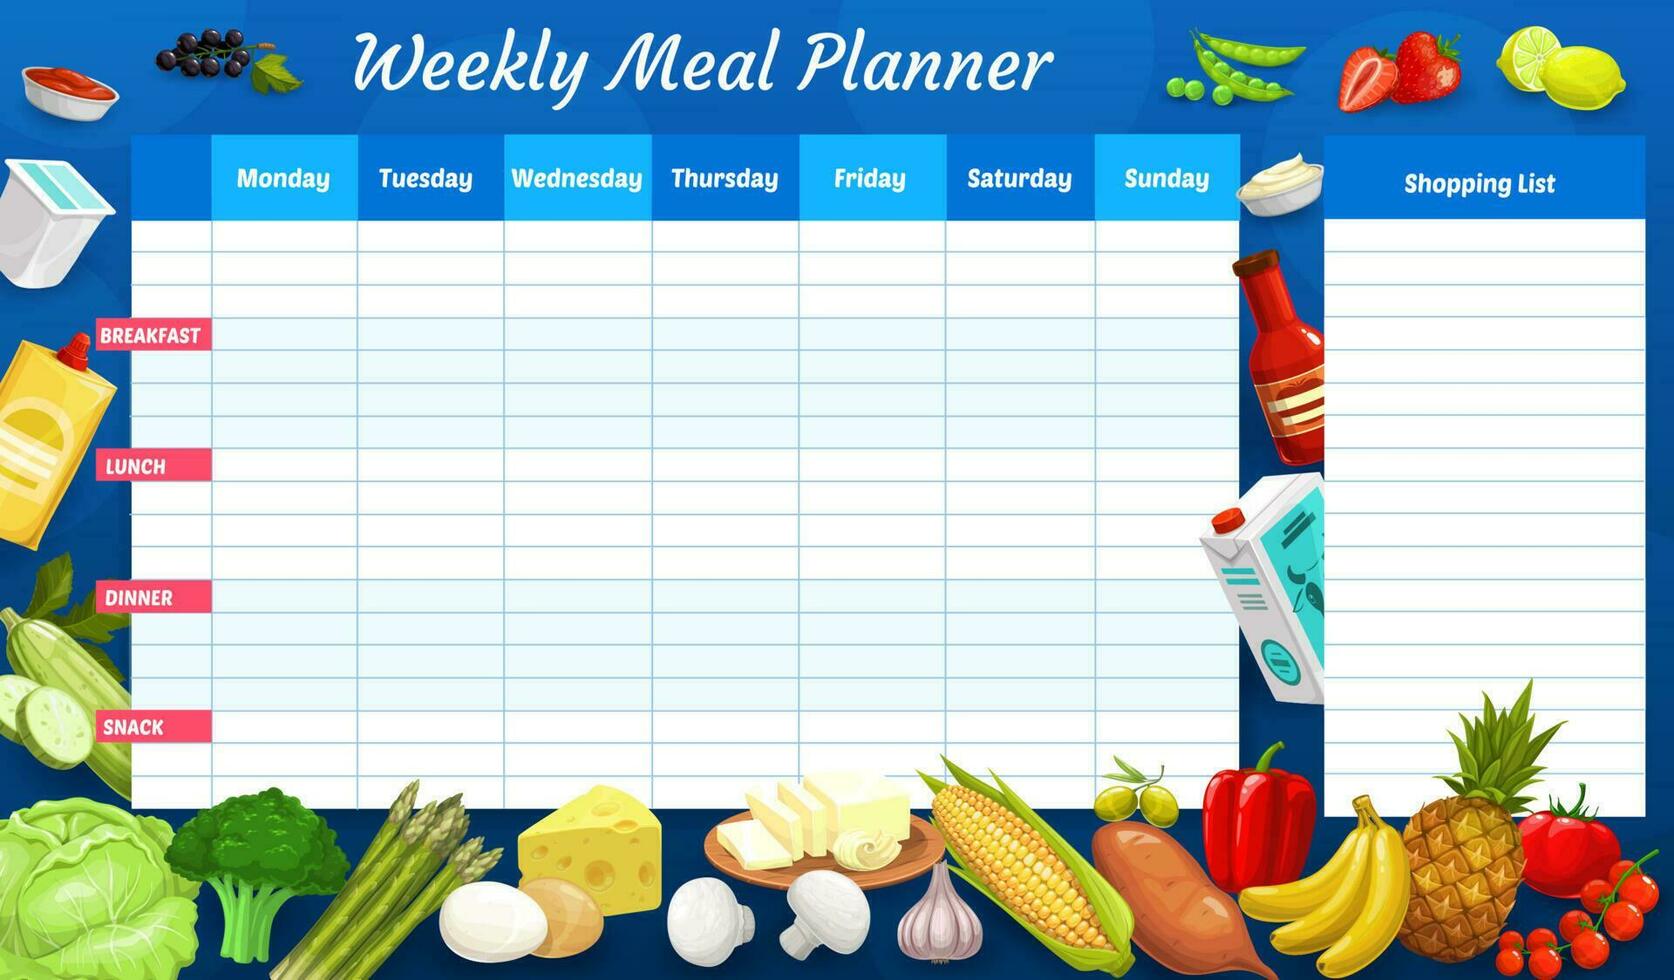 wöchentlich Mahlzeit Planer, Zeitplan, Woche Essen planen vektor